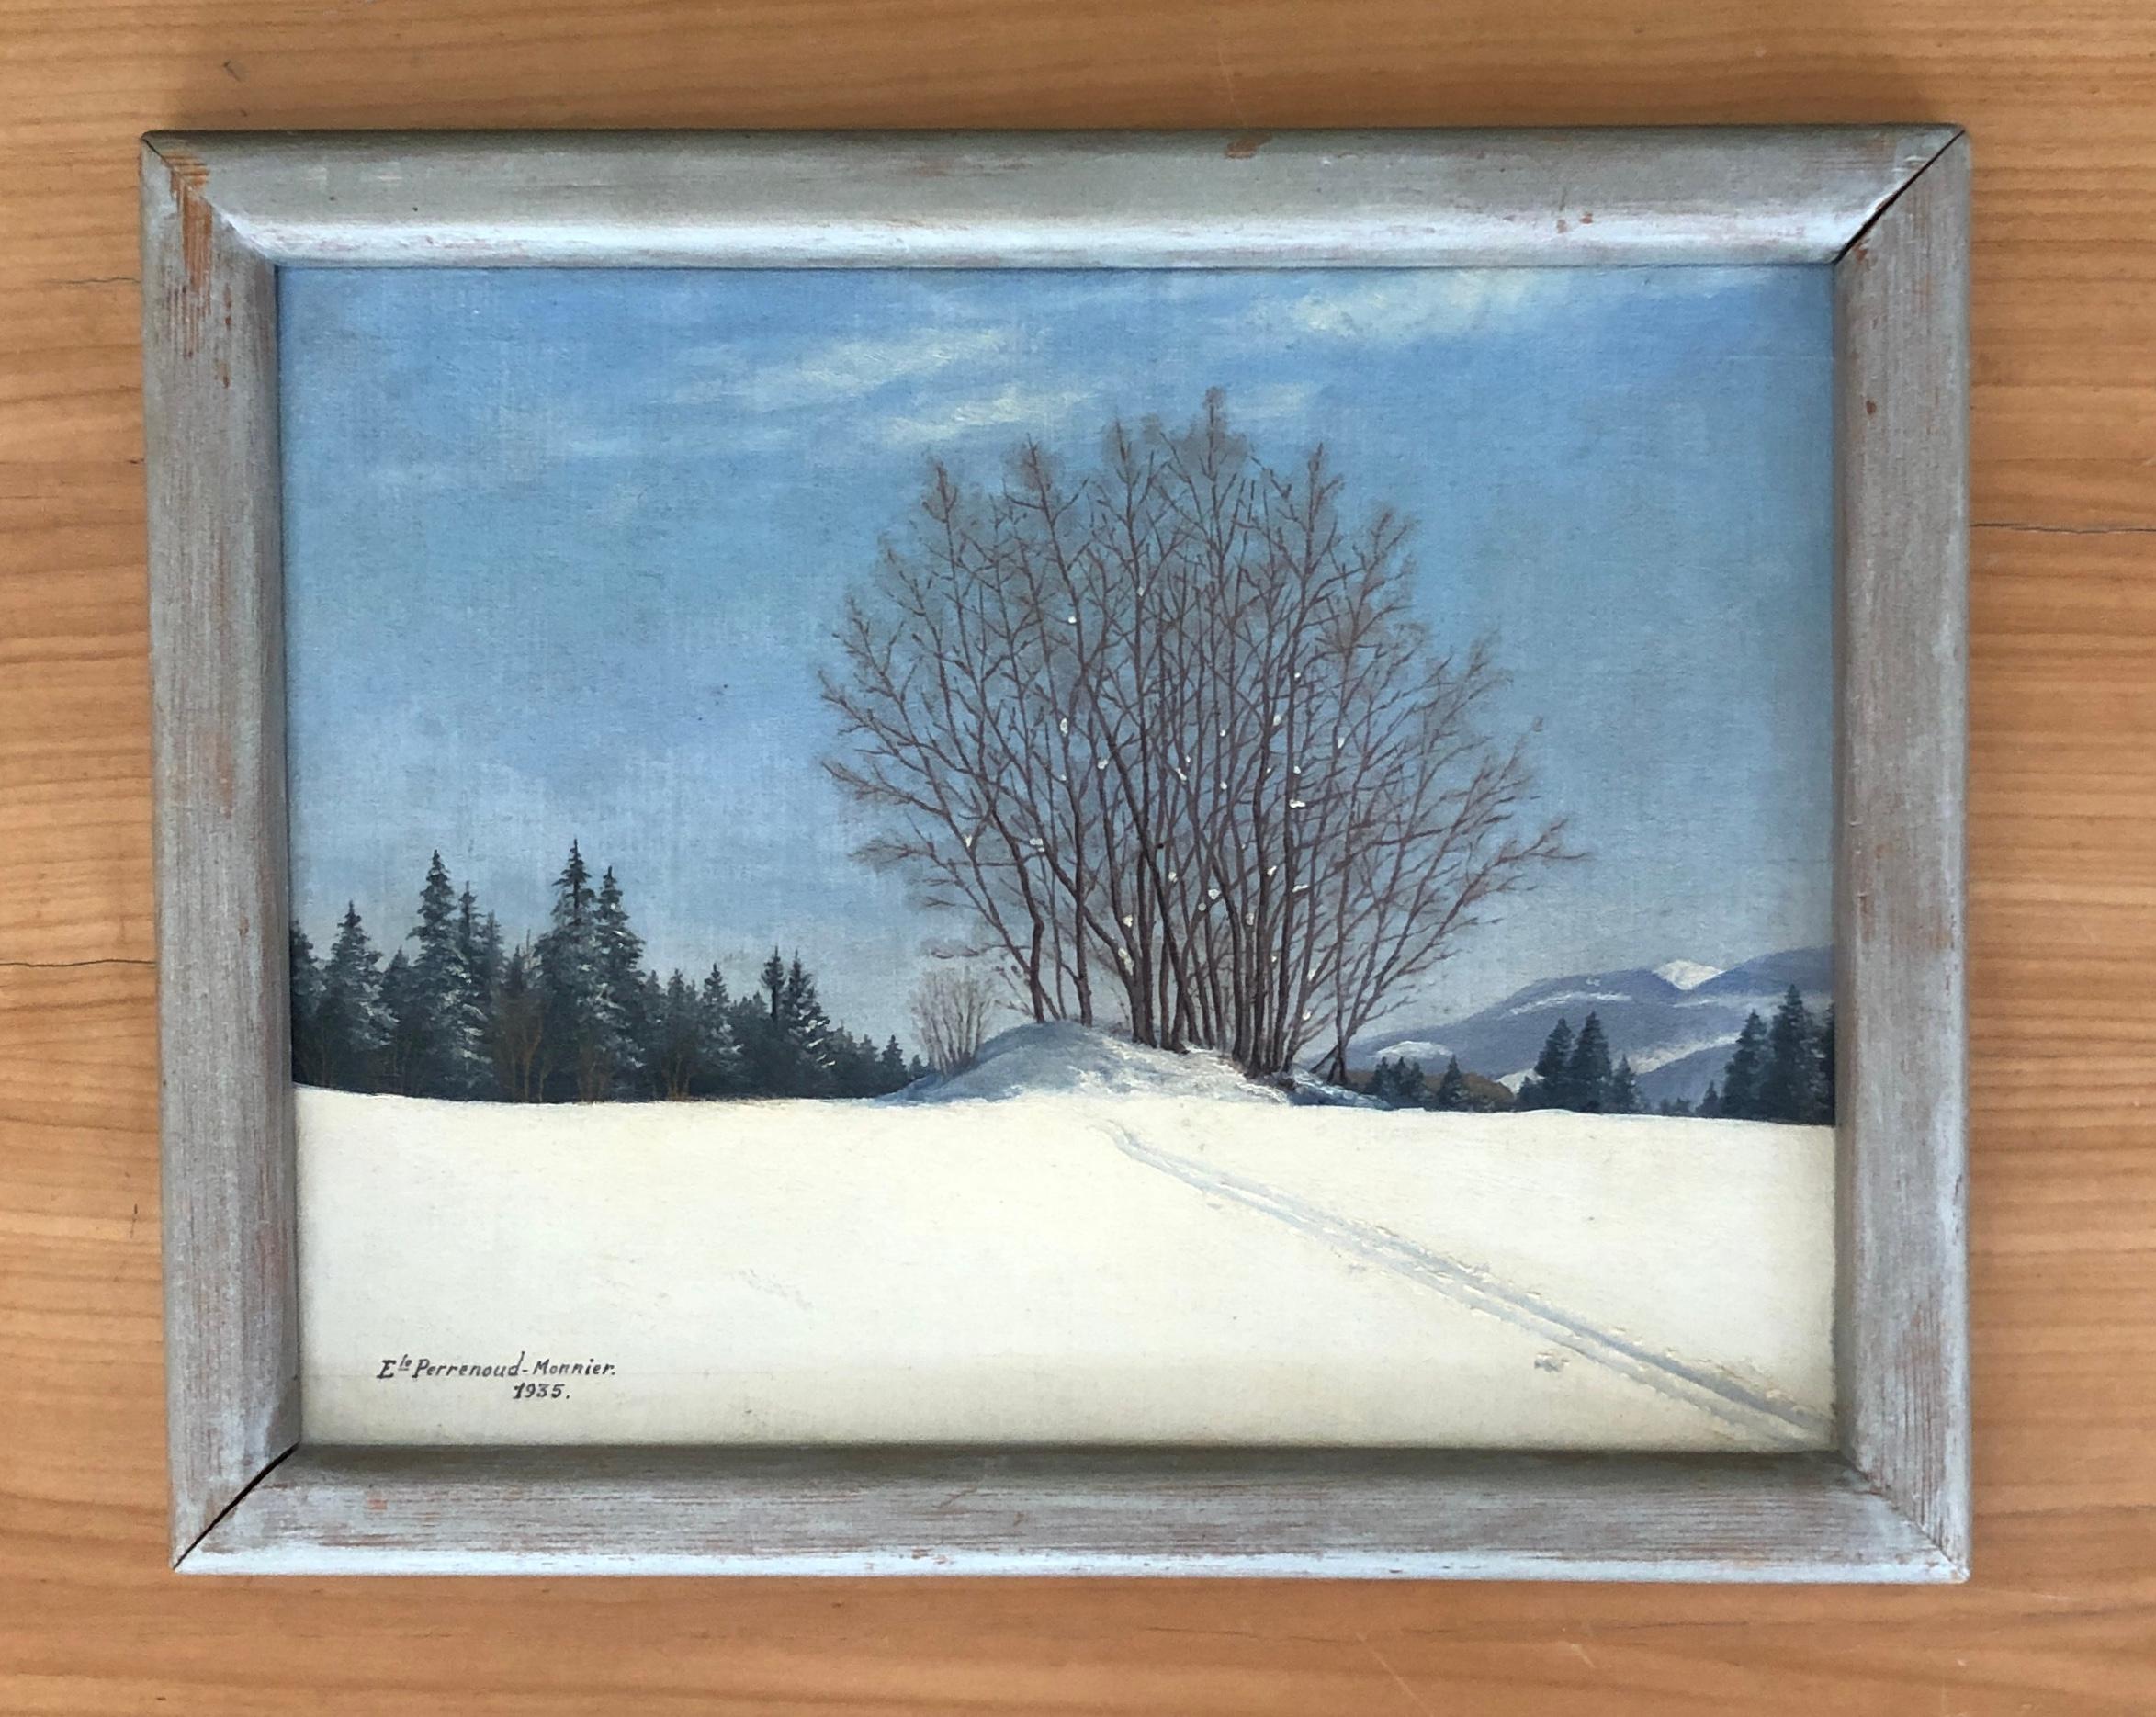 Verschneite Landschaft – Painting von E. Perrenoud -Monnier